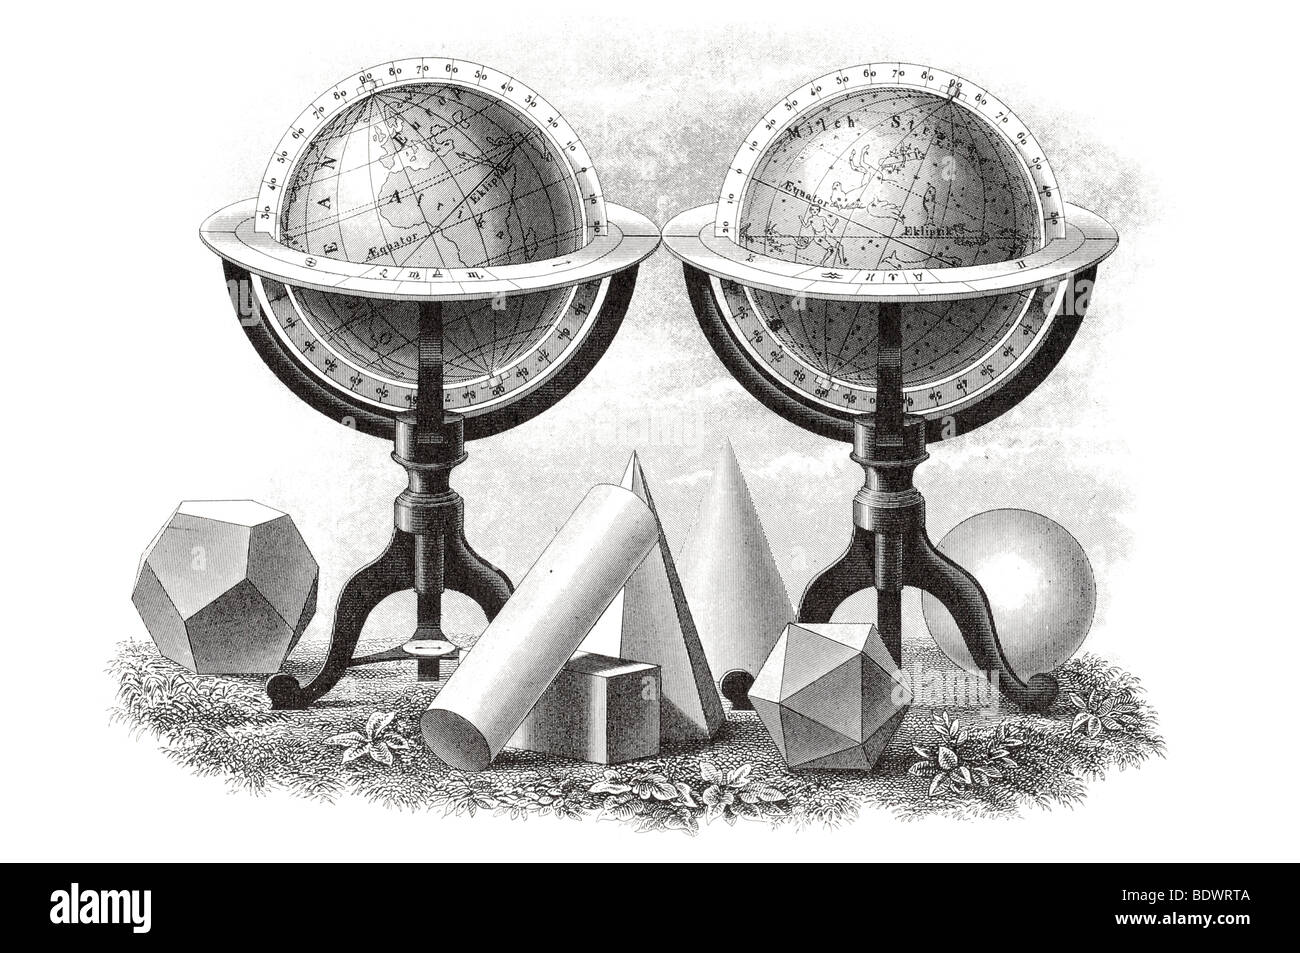 Matematica e problemi geometrici bussola strumento righello misura astrolabio sextant ellisse di rotazione della terra gravit sferica Foto Stock